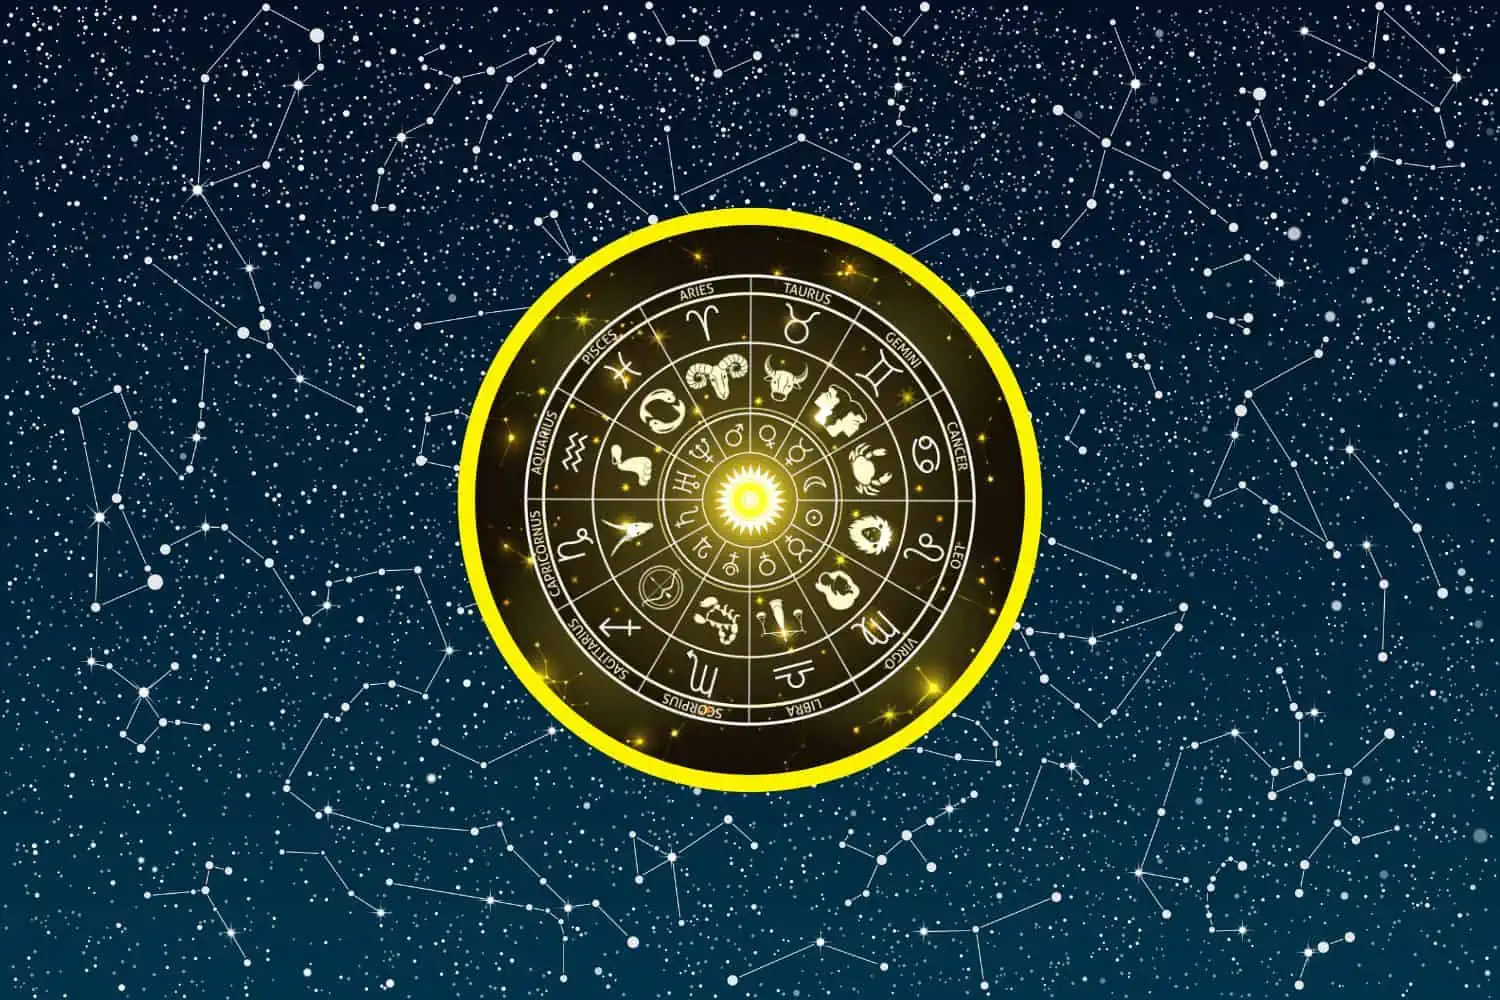 Today’s Free Horoscopes Friday 27 January 2023